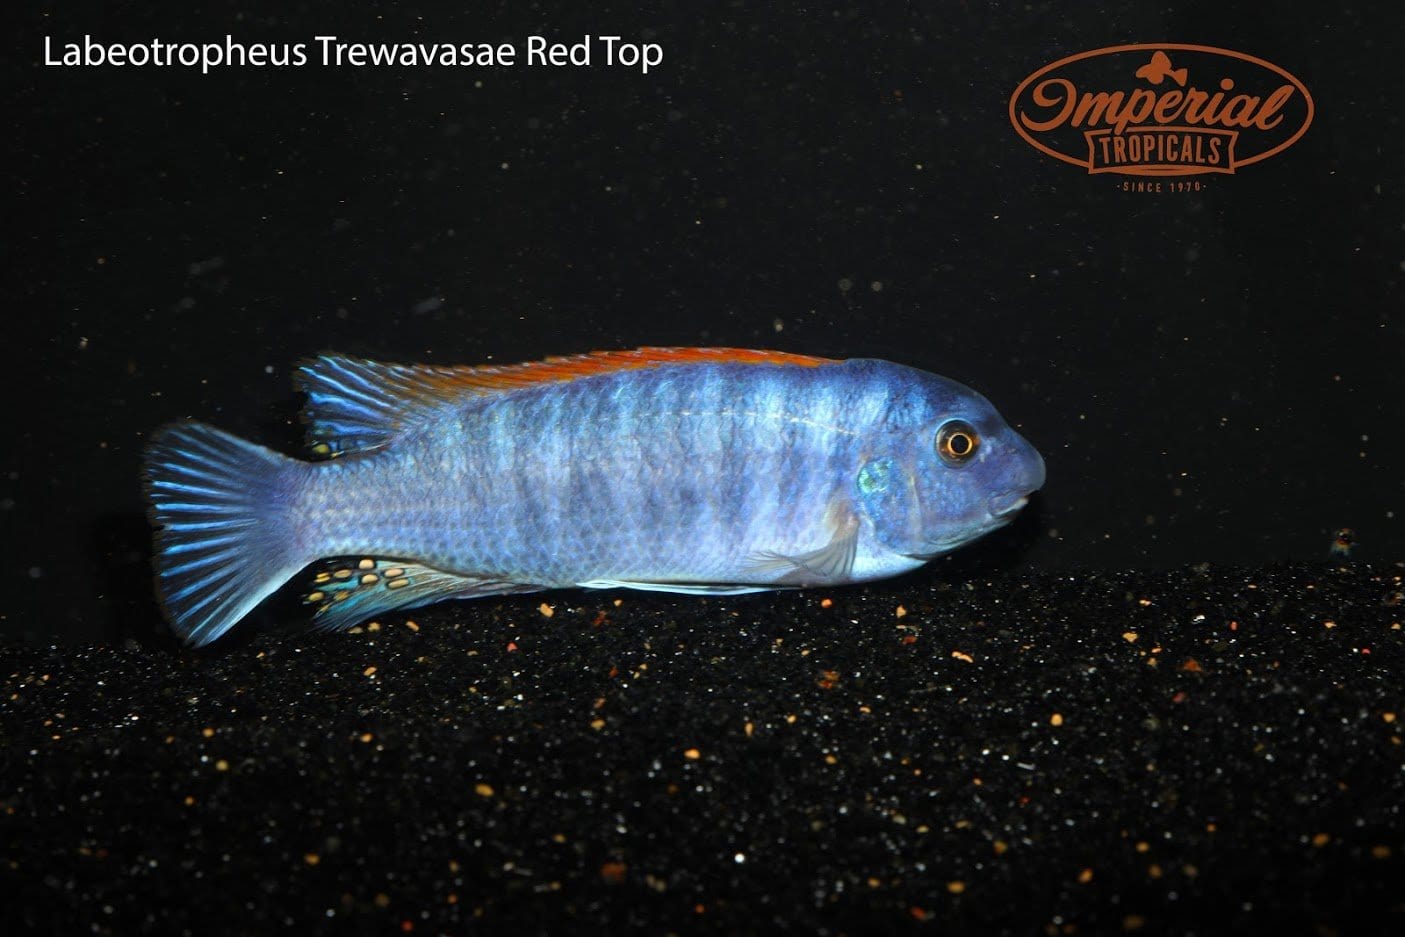 Red Top (Labeotropheus trewavasae) - Imperial Tropicals